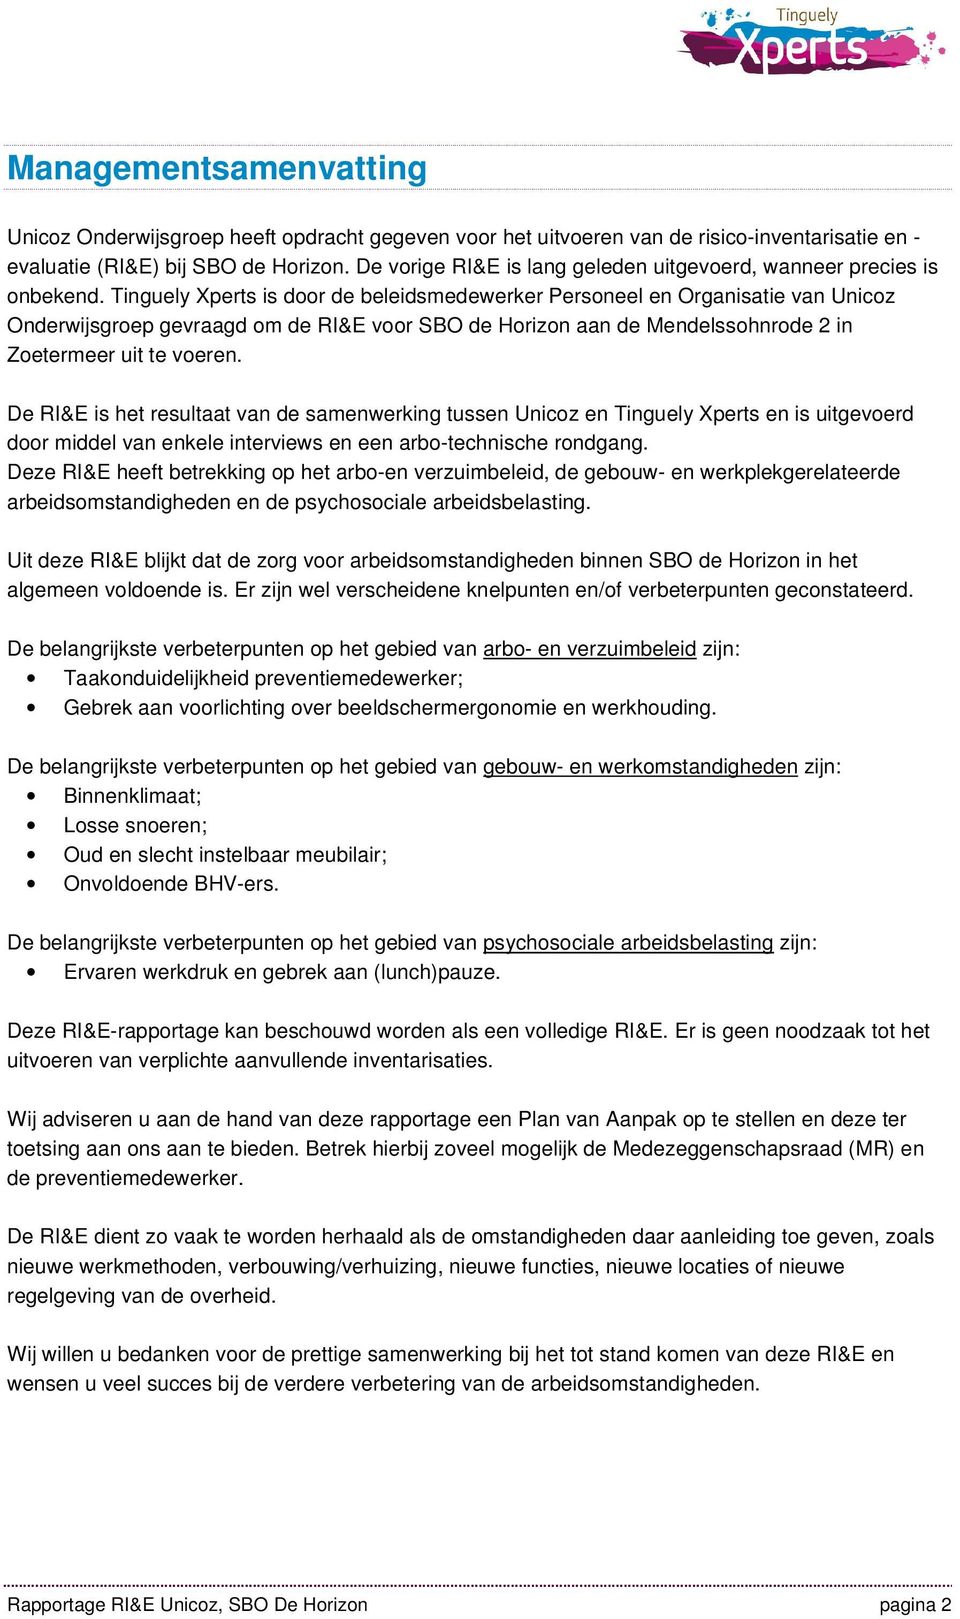 Tinguely Xperts is door de beleidsmedewerker Personeel en Organisatie van Unicoz Onderwijsgroep gevraagd om de RI&E voor SBO de Horizon aan de Mendelssohnrode 2 in Zoetermeer uit te voeren.